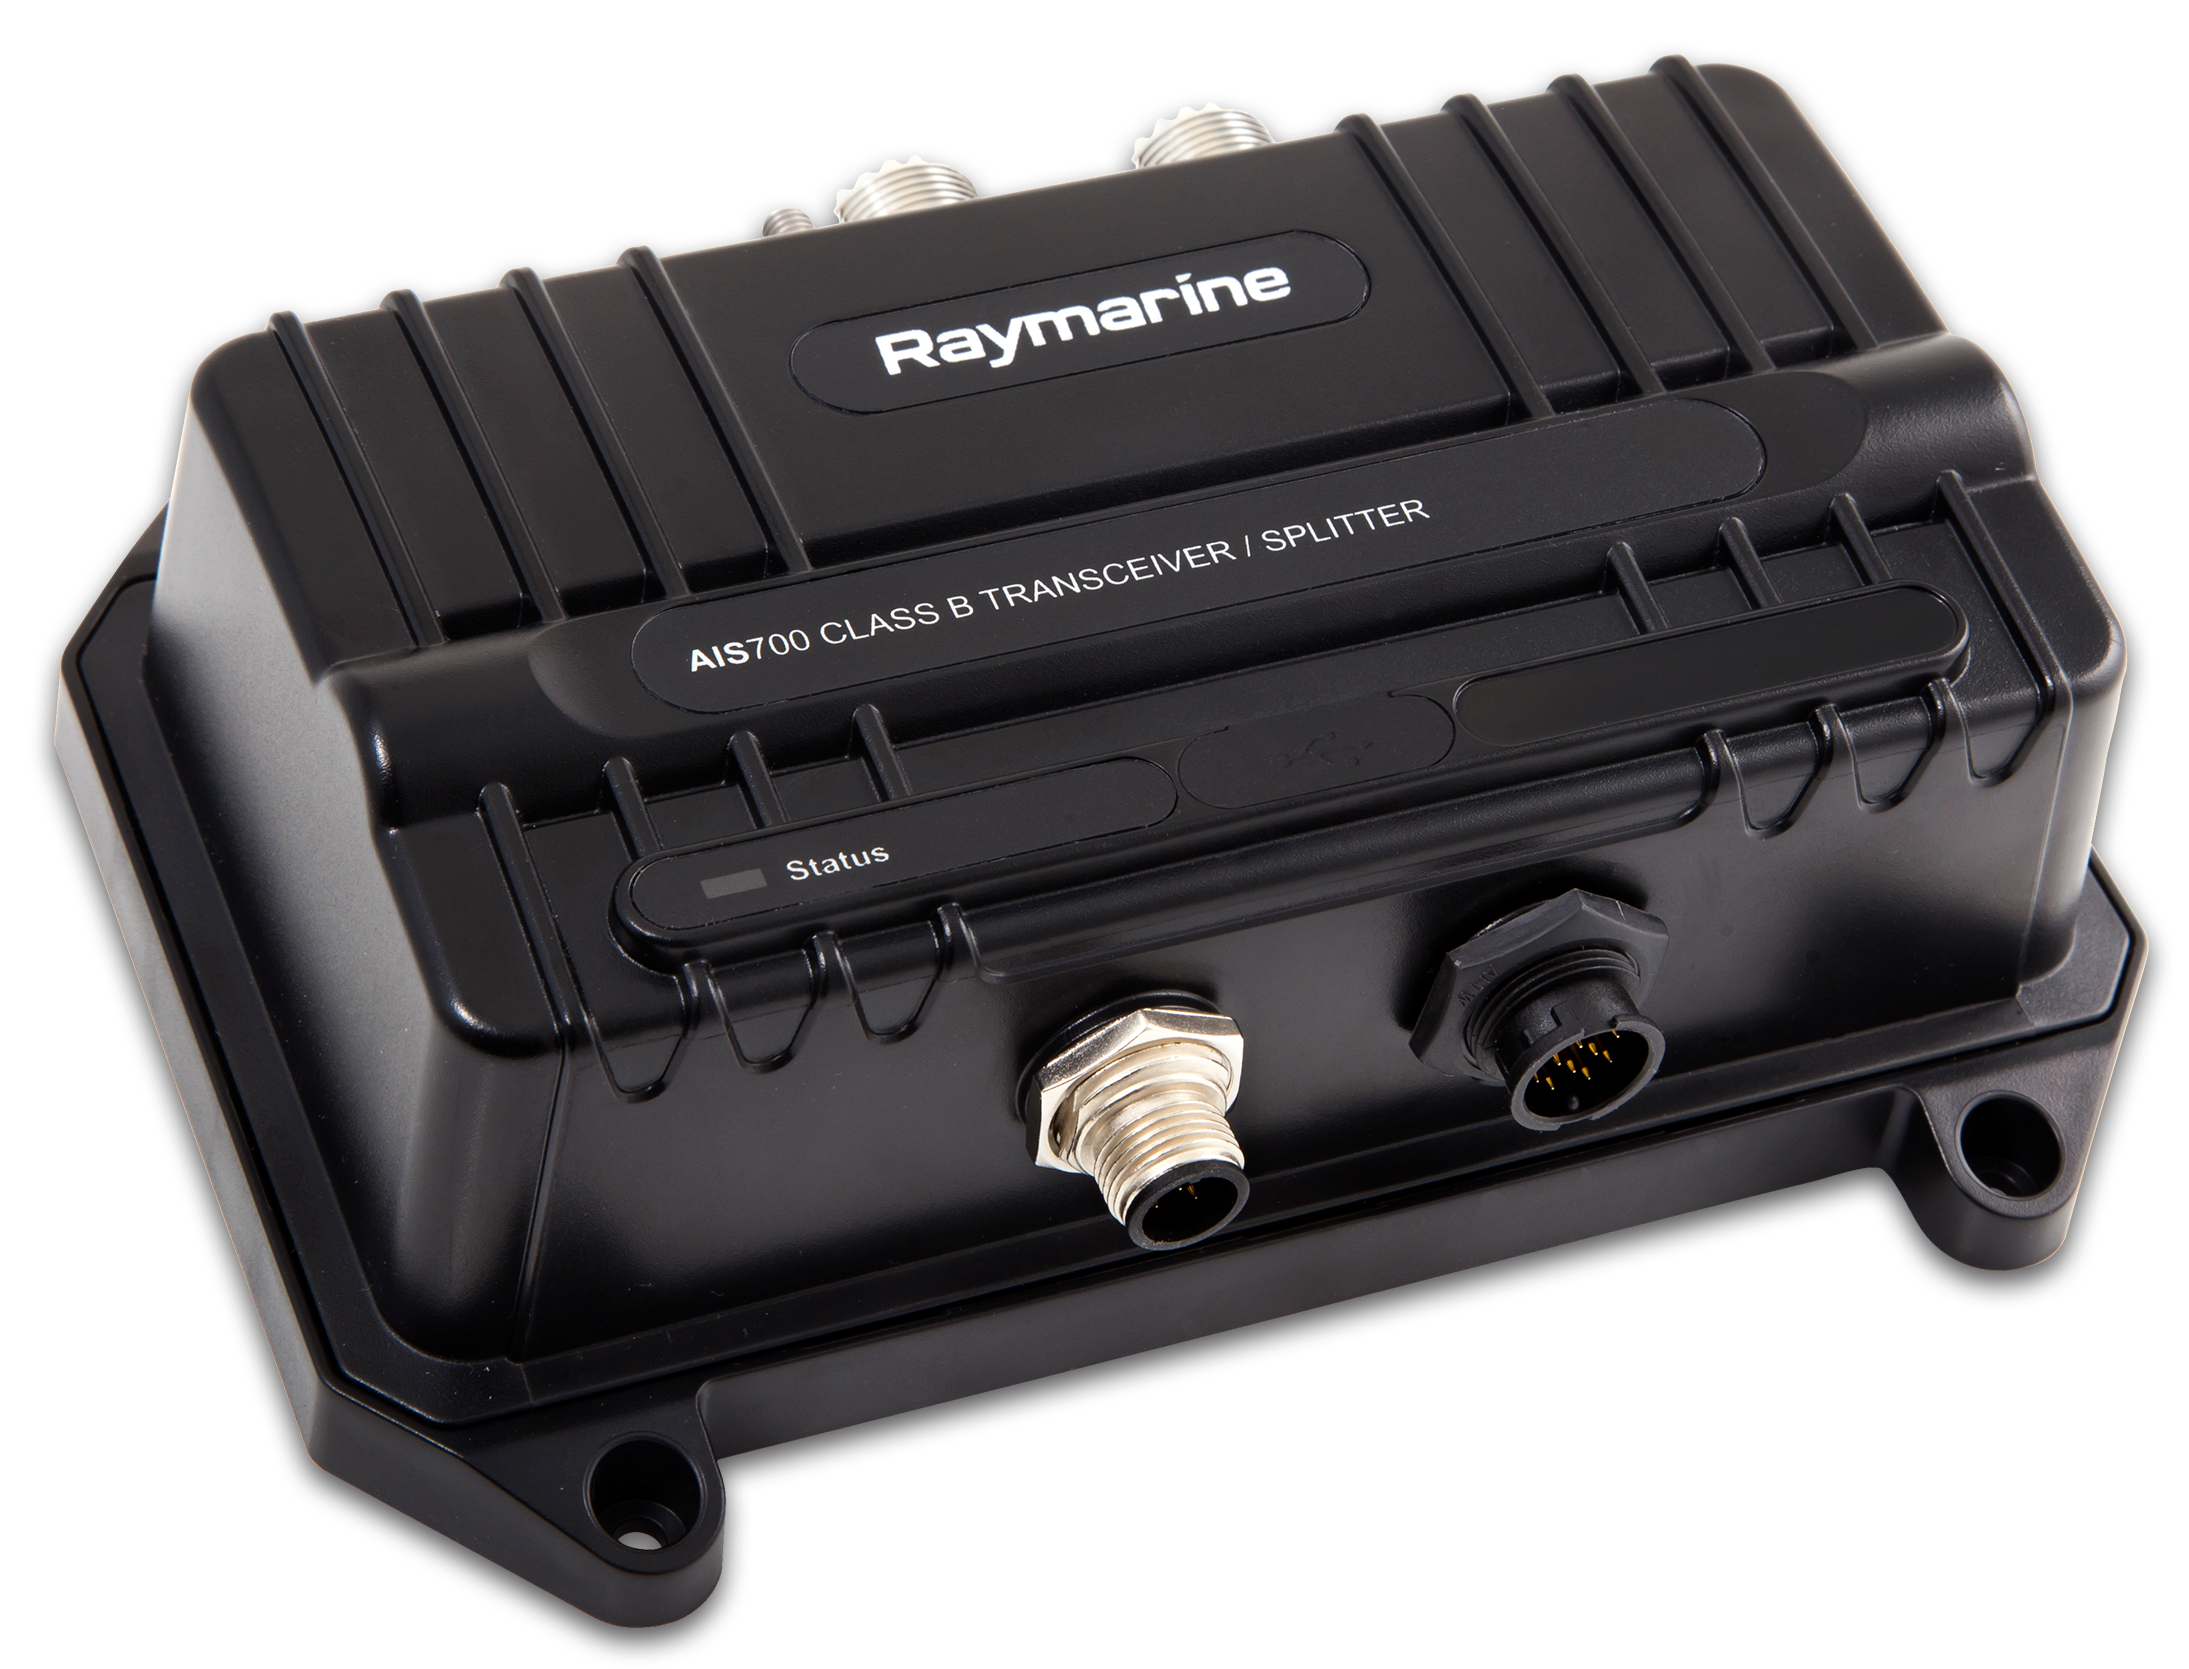 Raymarine AIS 700